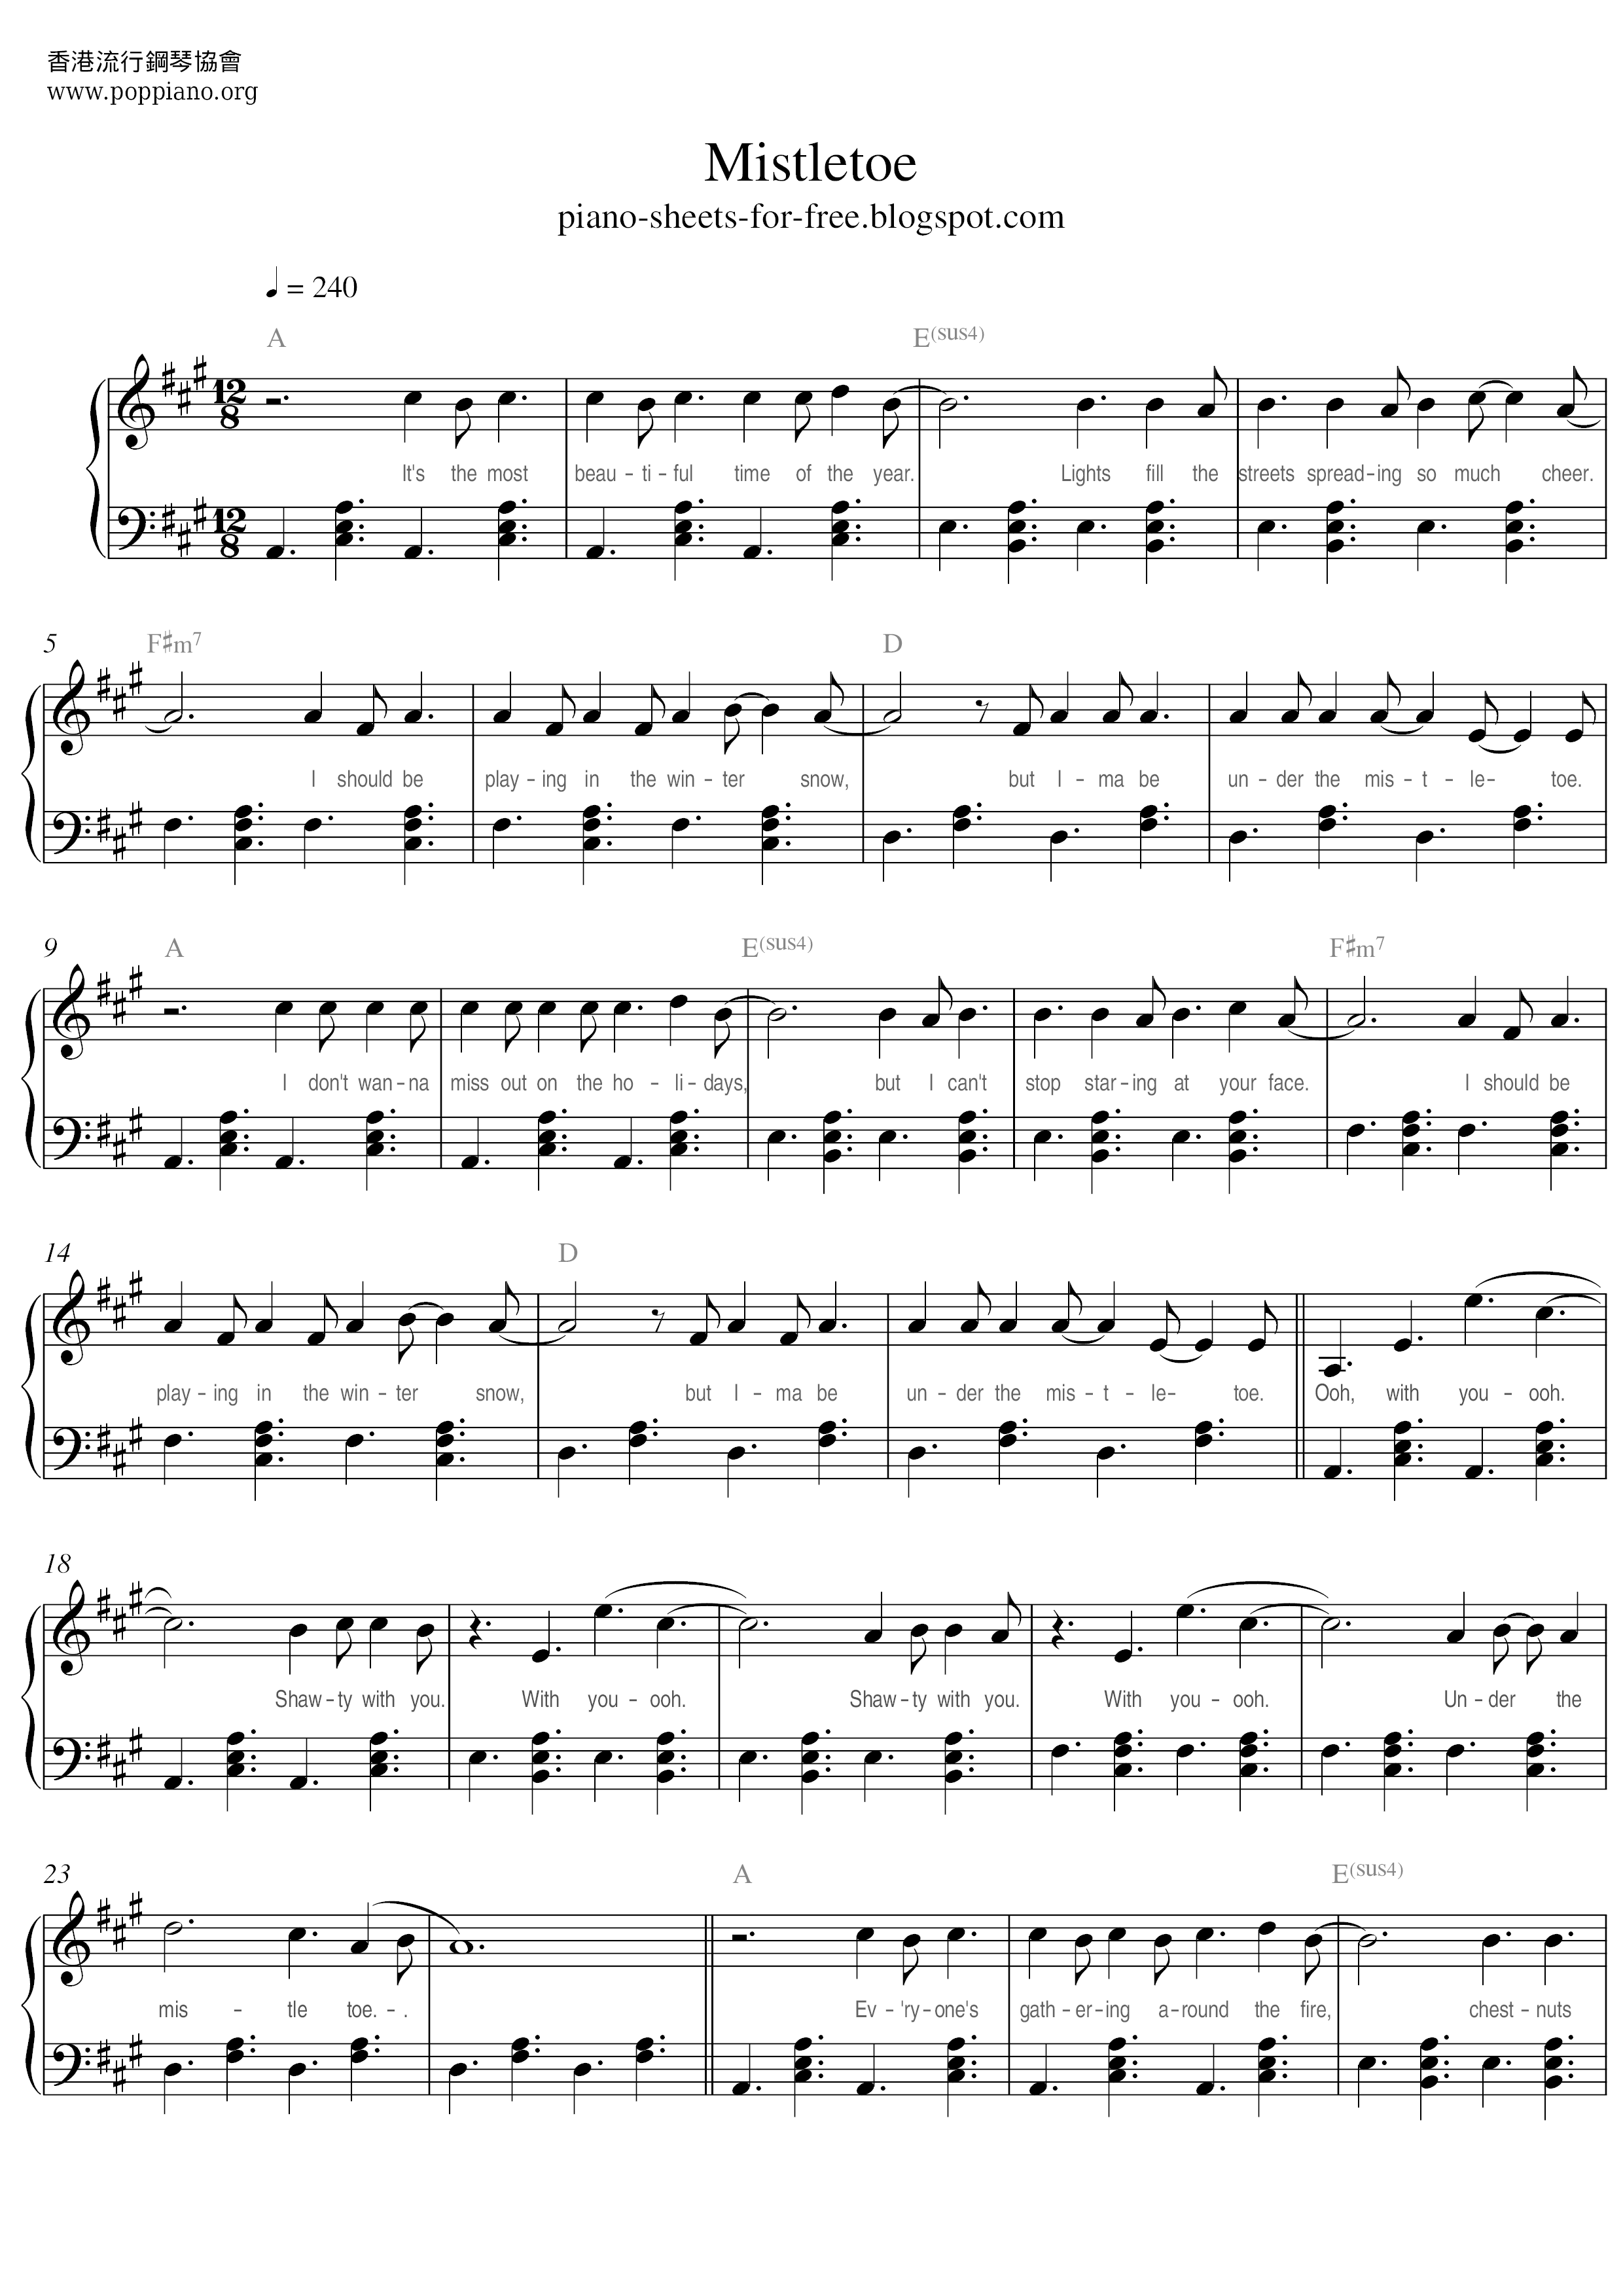 Mistletoe Score